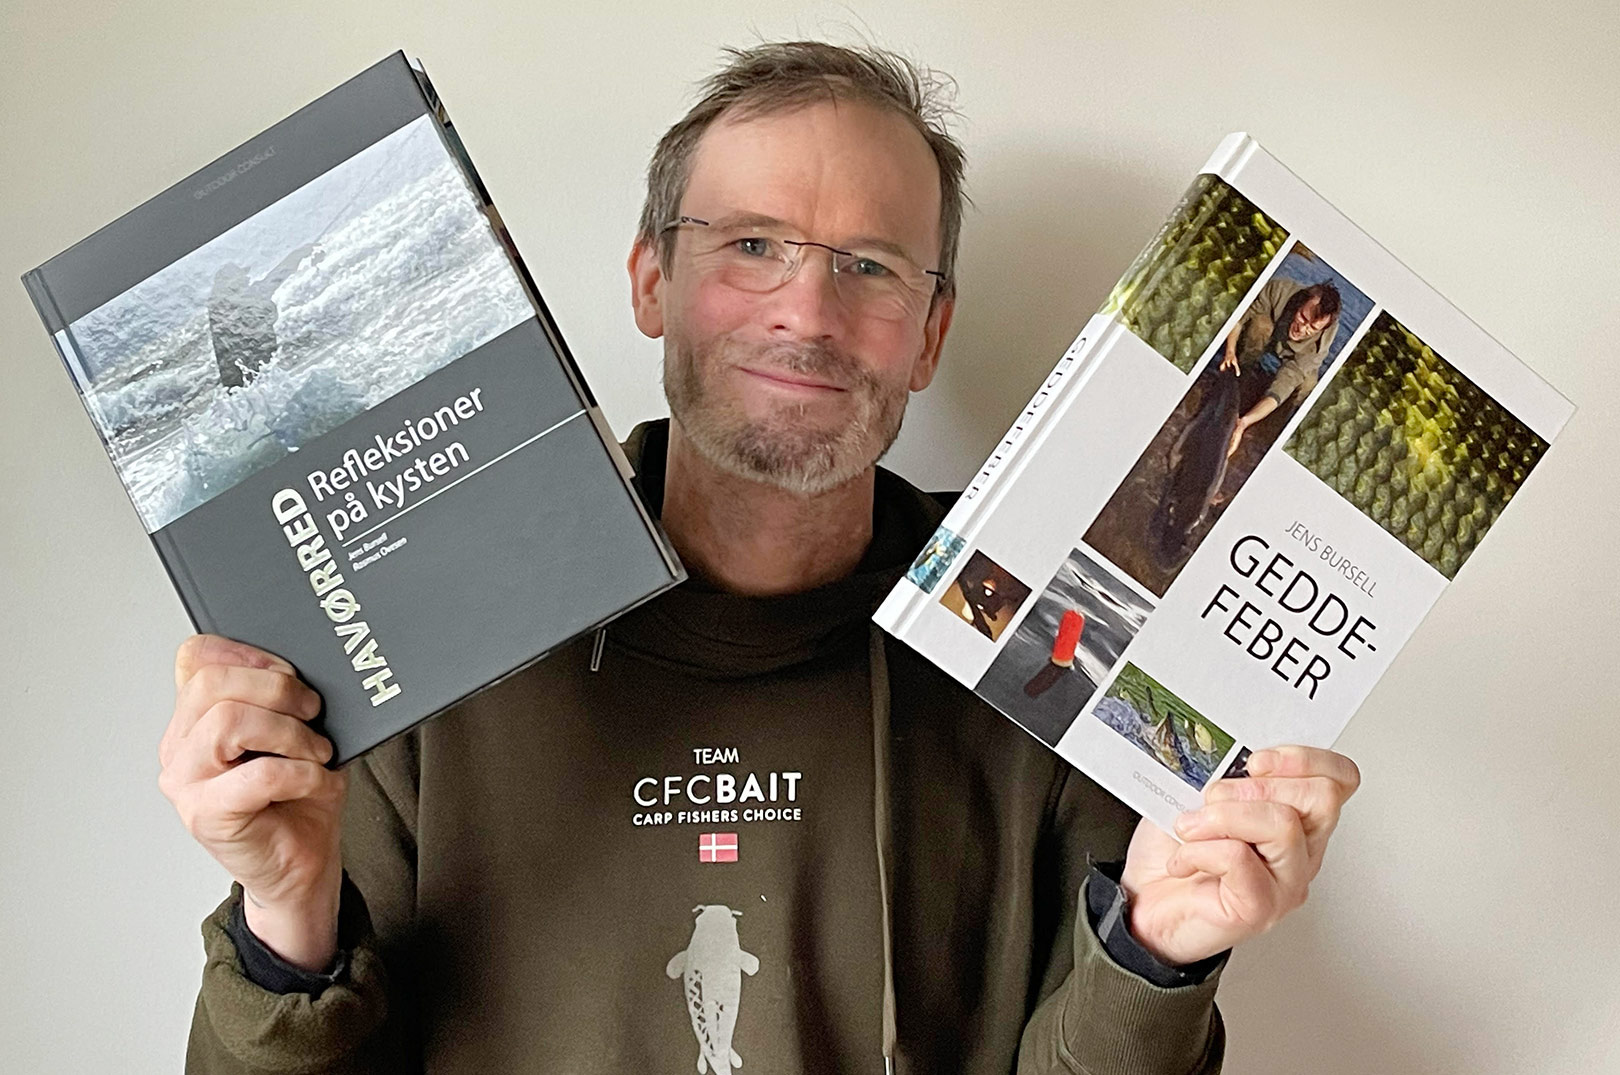 Til foredraget vil du kunne købe Jens Bursells to seneste bøger ”Geddefeber” og ”Havørred - refleksioner til kysten” med 50 kroners rabat – hhv 199 og 329 kroner.